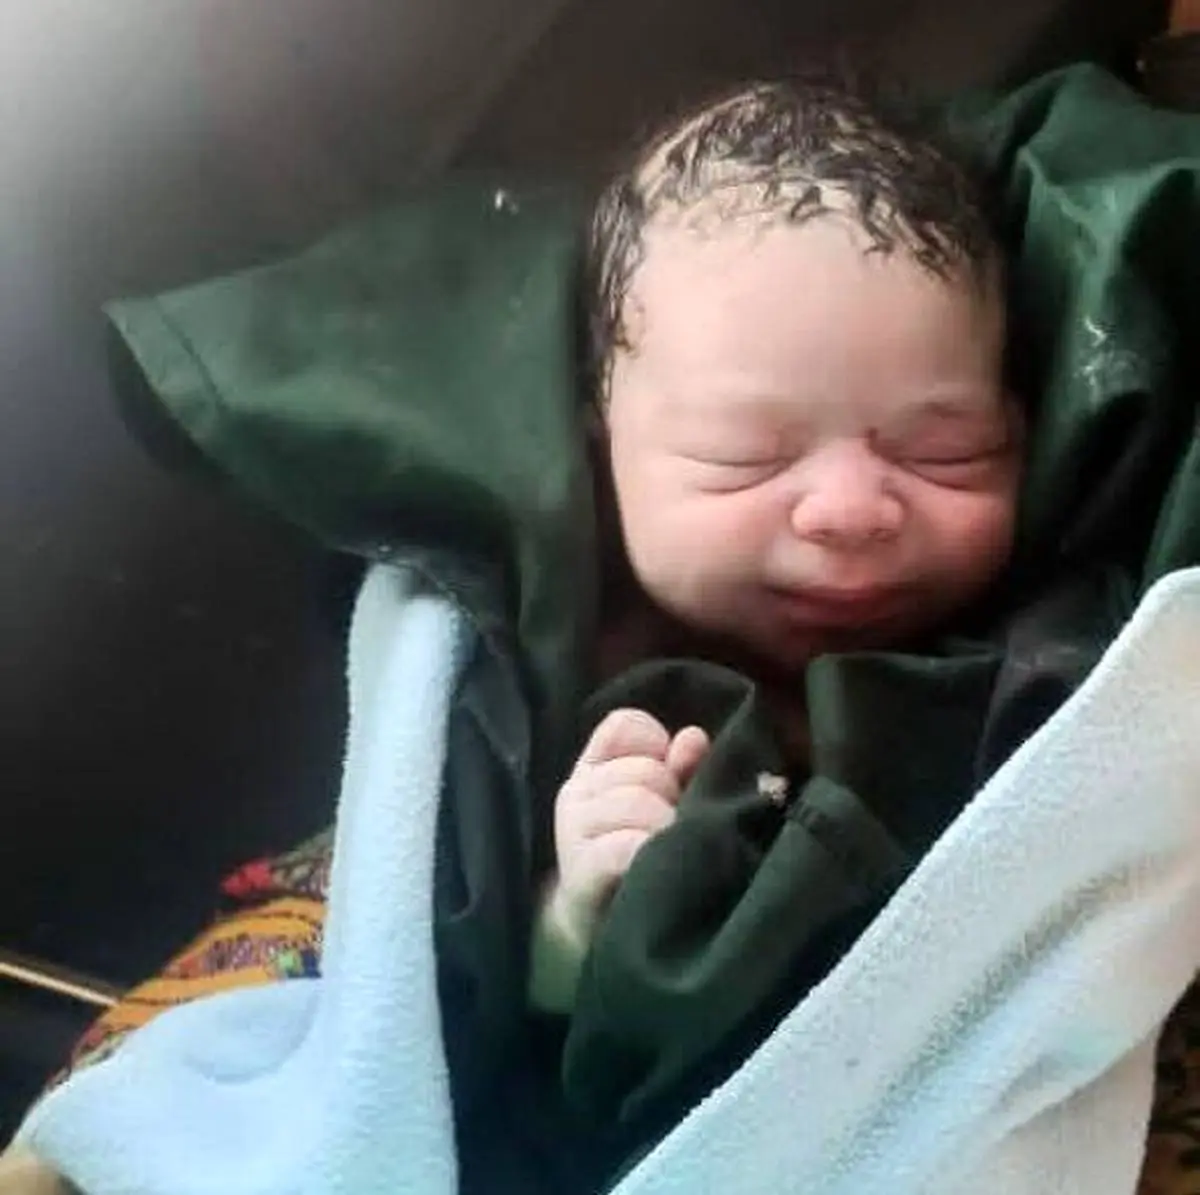 اولین عکس از نوزادی که در سطل آشغال بود | بغض و گریه زاری مادر نوزاد 2 روزه در نازی آباد 